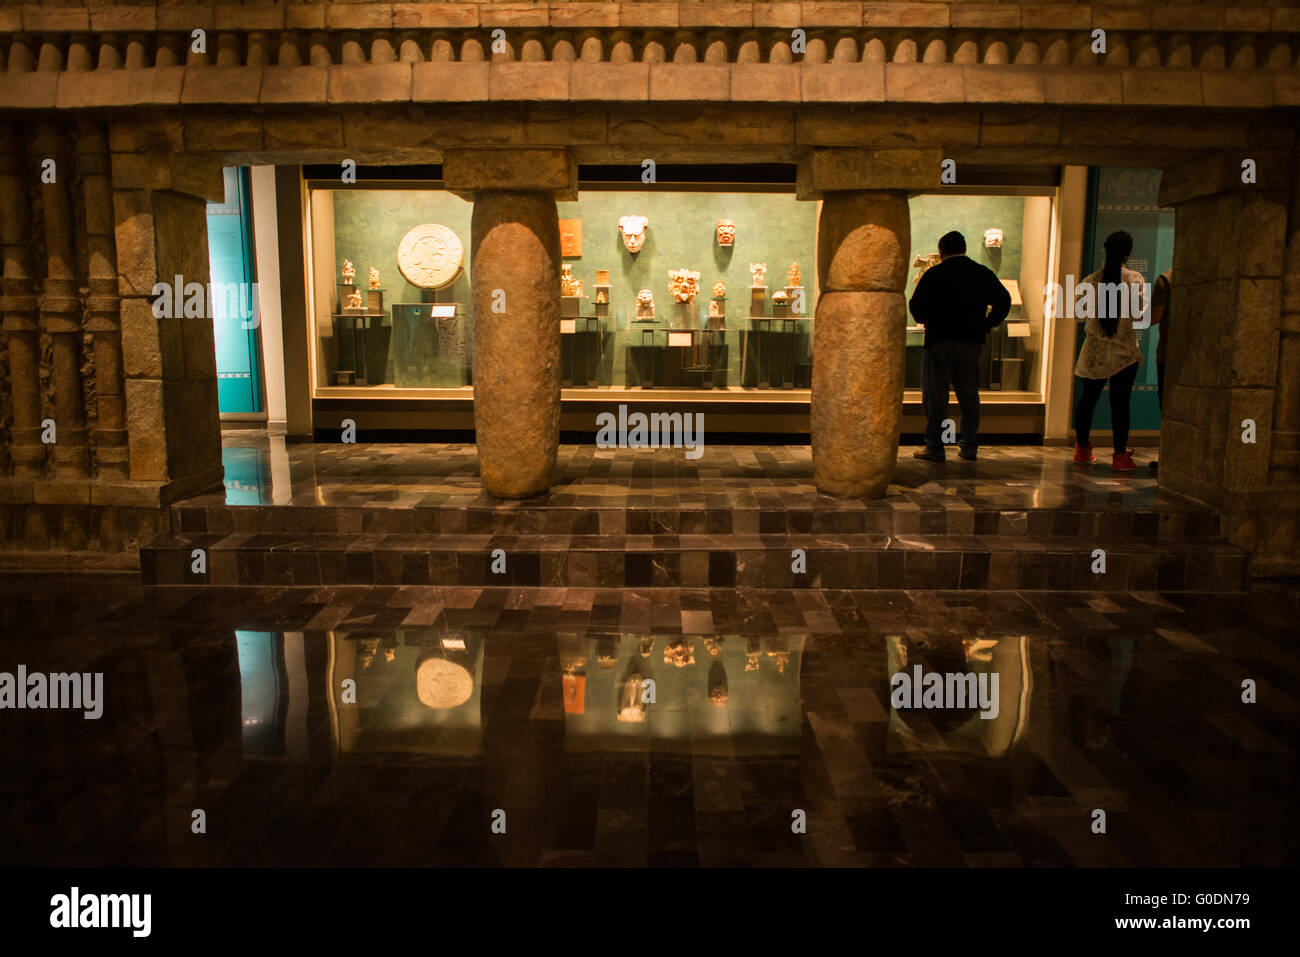 La VILLE DE MEXICO, MEXIQUE -- Le Musée National d'anthropologie en vedette d'importants artefacts archéologiques et anthropologiques de l'époque pré-colombienne du Mexique, y compris son patrimoine et cultures aztèque indiginous. Banque D'Images